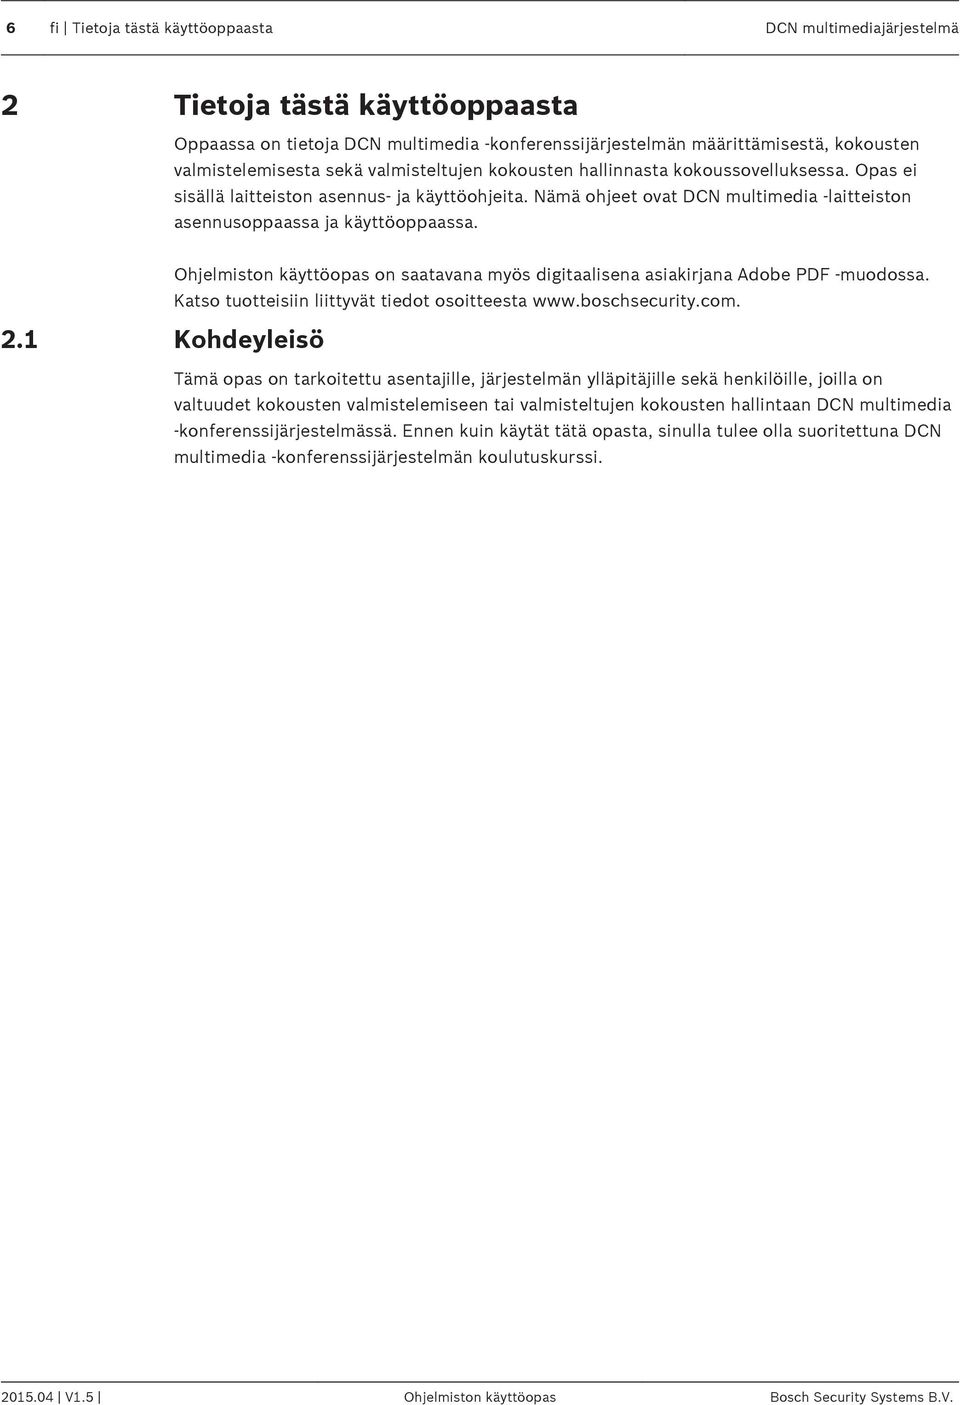 Ohjelmiston käyttöopas on saatavana myös digitaalisena asiakirjana Adobe PDF -muodossa. Katso tuotteisiin liittyvät tiedot osoitteesta www.boschsecurity.com. 2.